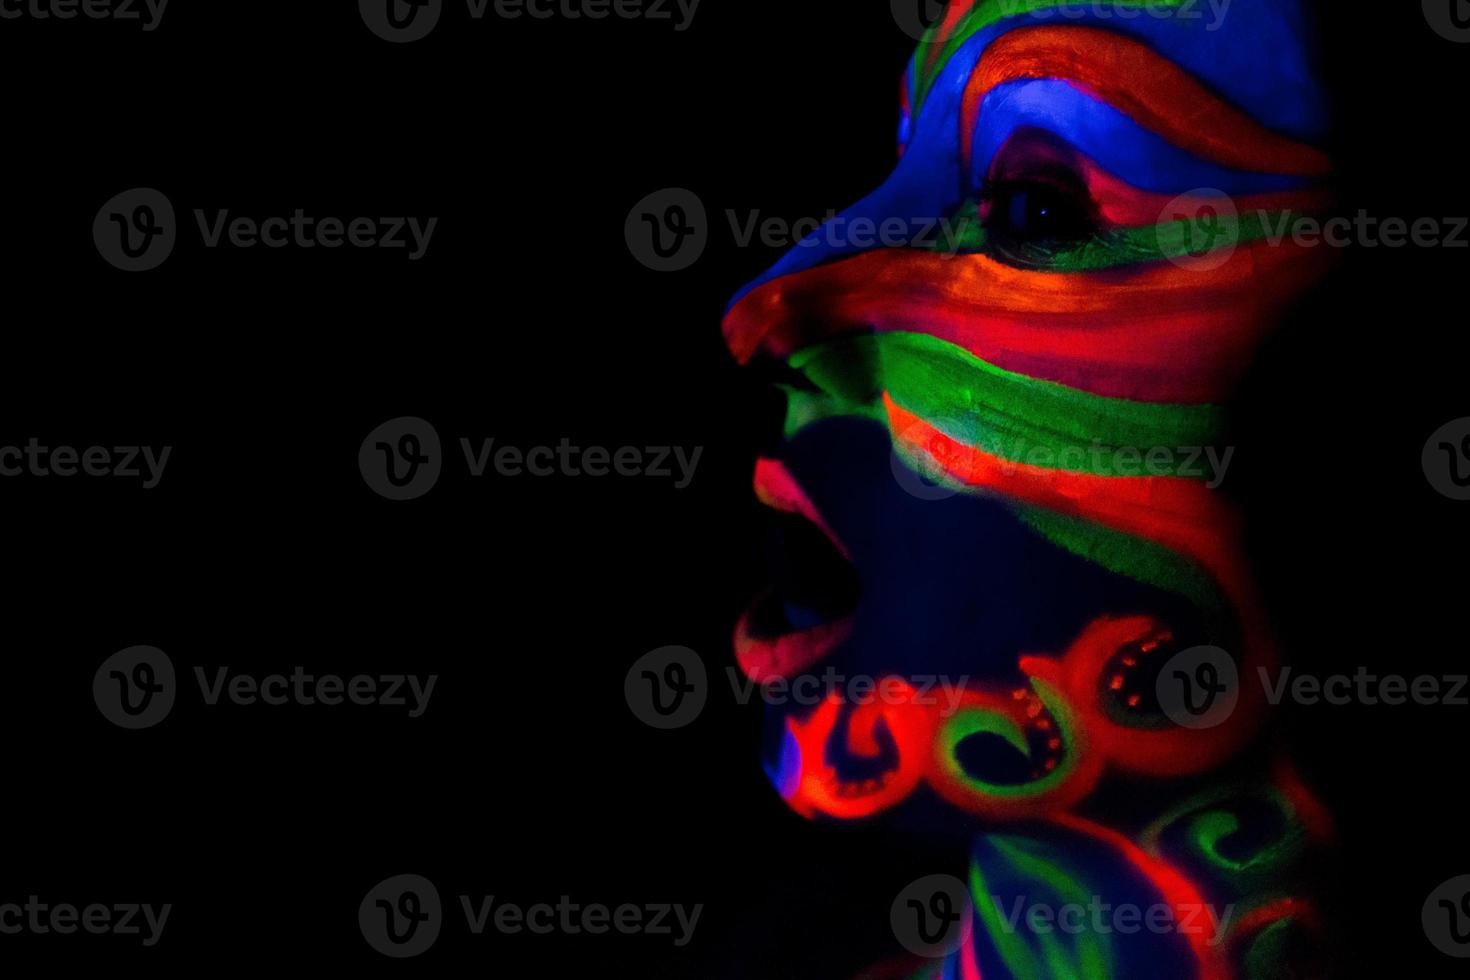 donna con arte del trucco di polvere fluorescente uv incandescente foto